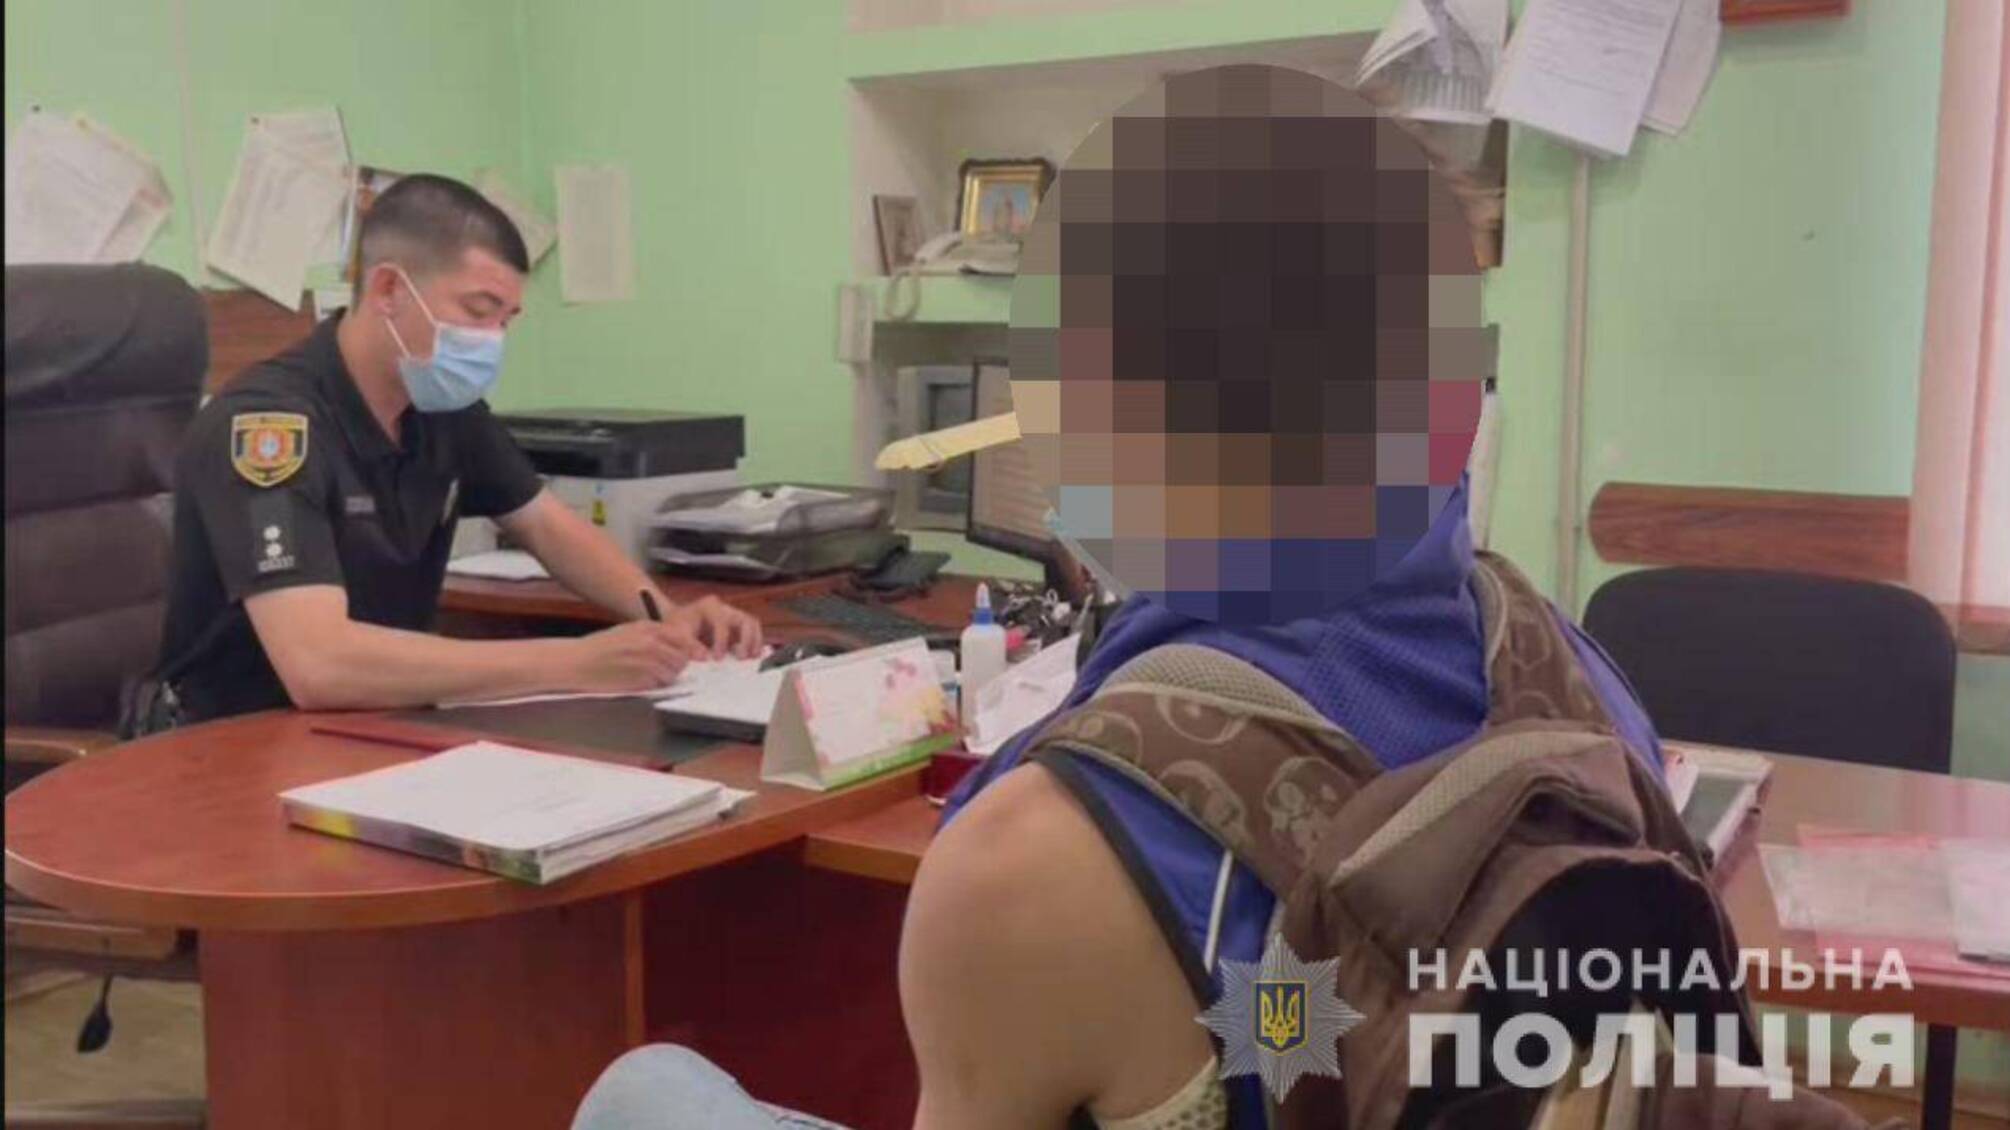 На Одещині правоохоронці затримали 31-річного чоловіка за підозрою у зґвалтуванні малолітньої дівчинки